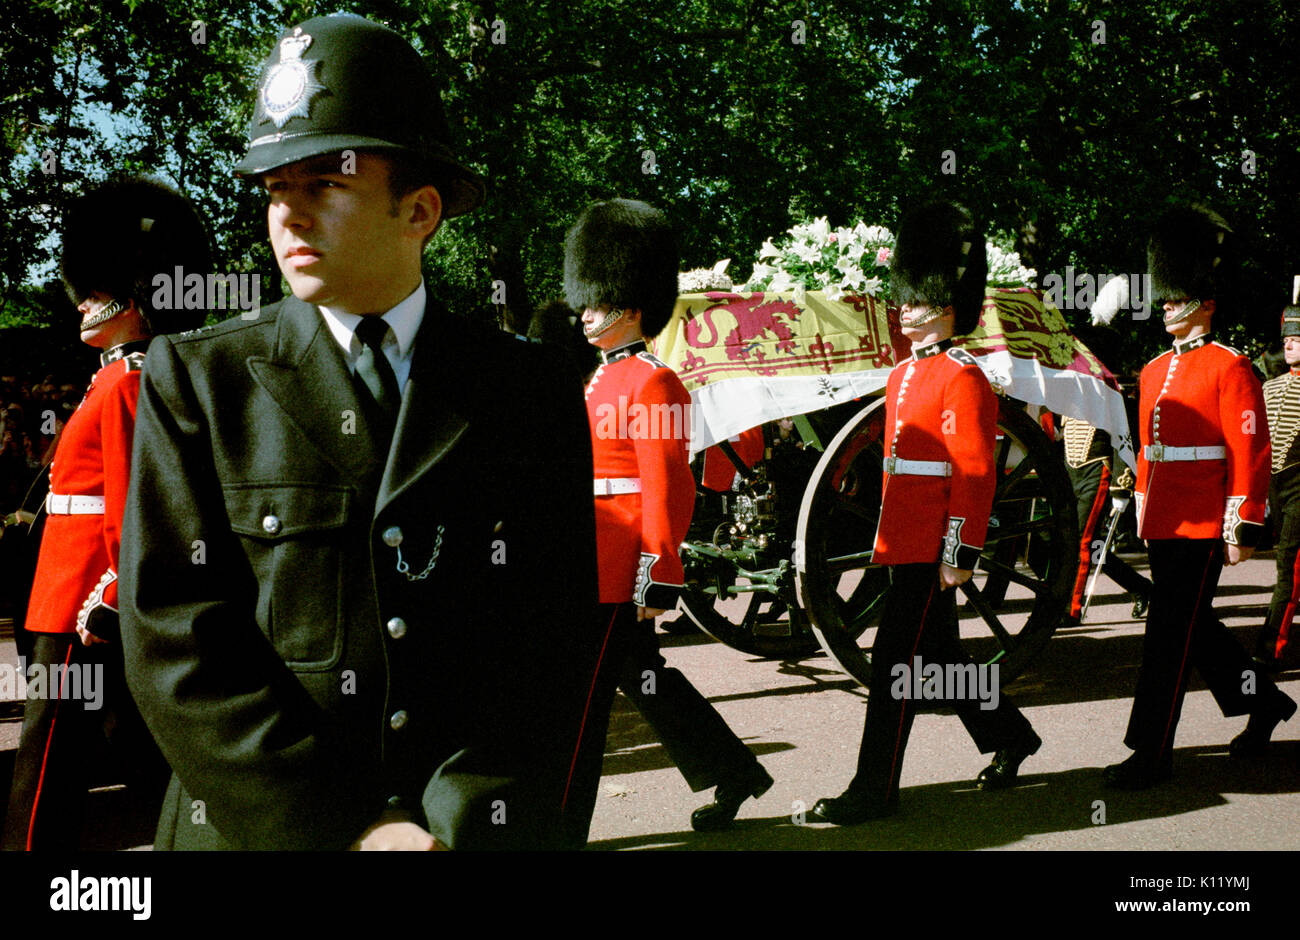 Londra, UK, 6 settembre, 1997. Funerali di Diana, principessa di Galles. La principessa Diana la bara drappeggiati con il royal standard è mostrato di essere trasportati su un carrello pistola accompagnato da otto membri delle guardie gallesi come il corteo funebre rende il modo lungo Horse Guards Road. Foto Stock